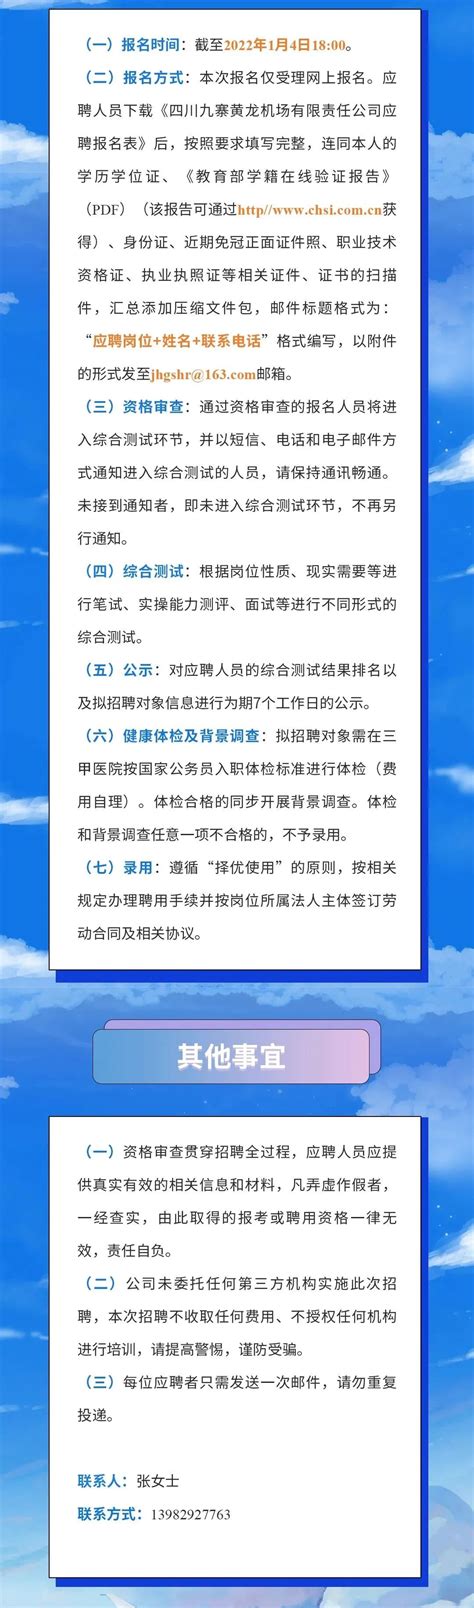 四川九寨黄龙机场有限责任公司2021-2022年招聘公告(含气象)-广东海洋大学海洋与气象学院